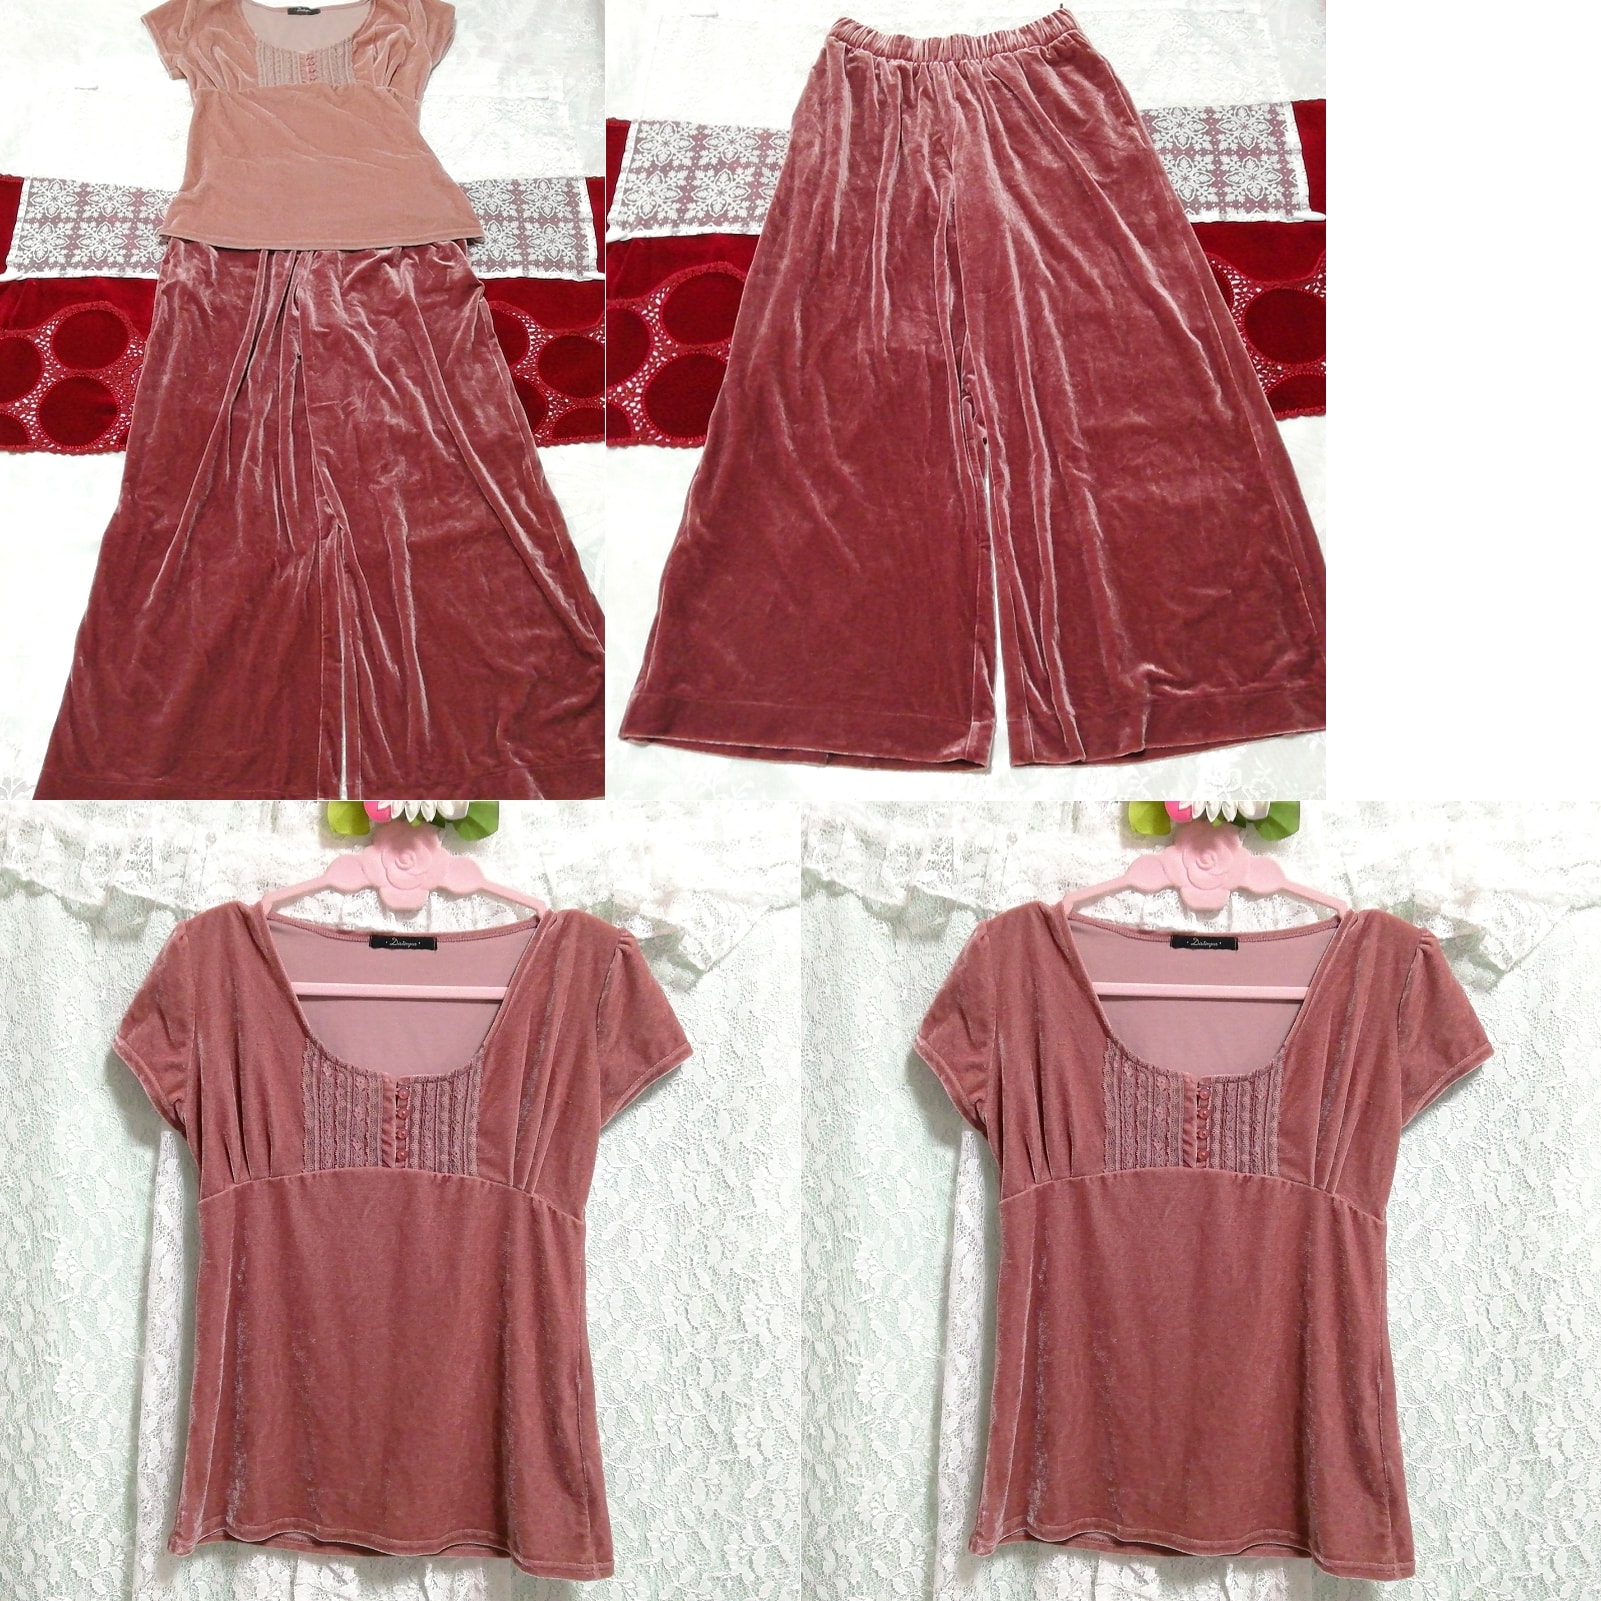 粉色短袖束腰睡衣玫瑰红色丝绒裙子 2 件, 时尚, 女士时装, 睡衣